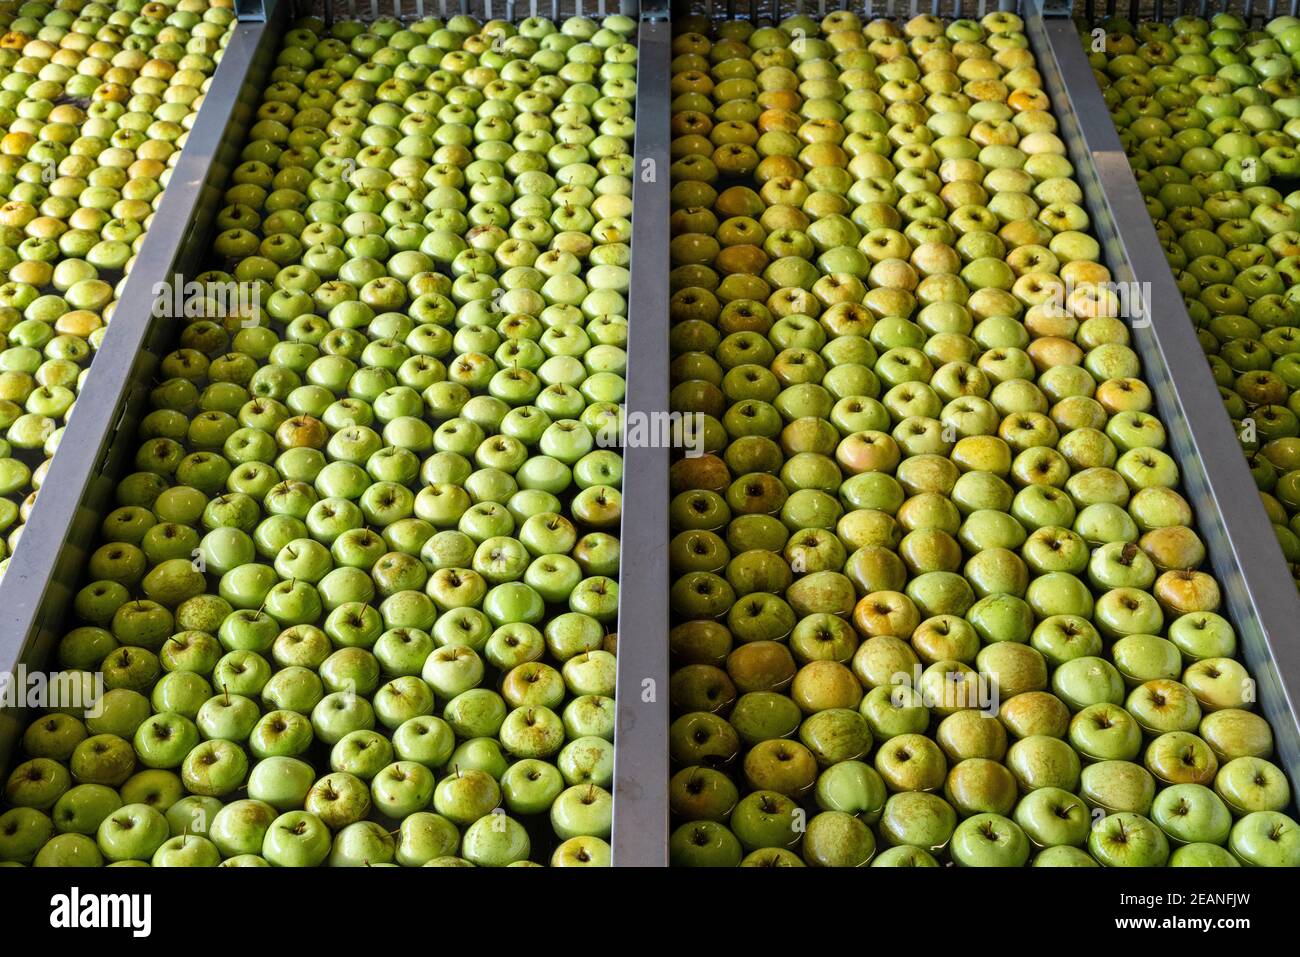 Tanques de agua llenos de manzanas en filas durante el proceso de lavado, Valtellina, provincia de Sondrio, Lombardía, Italia, Europa Foto de stock